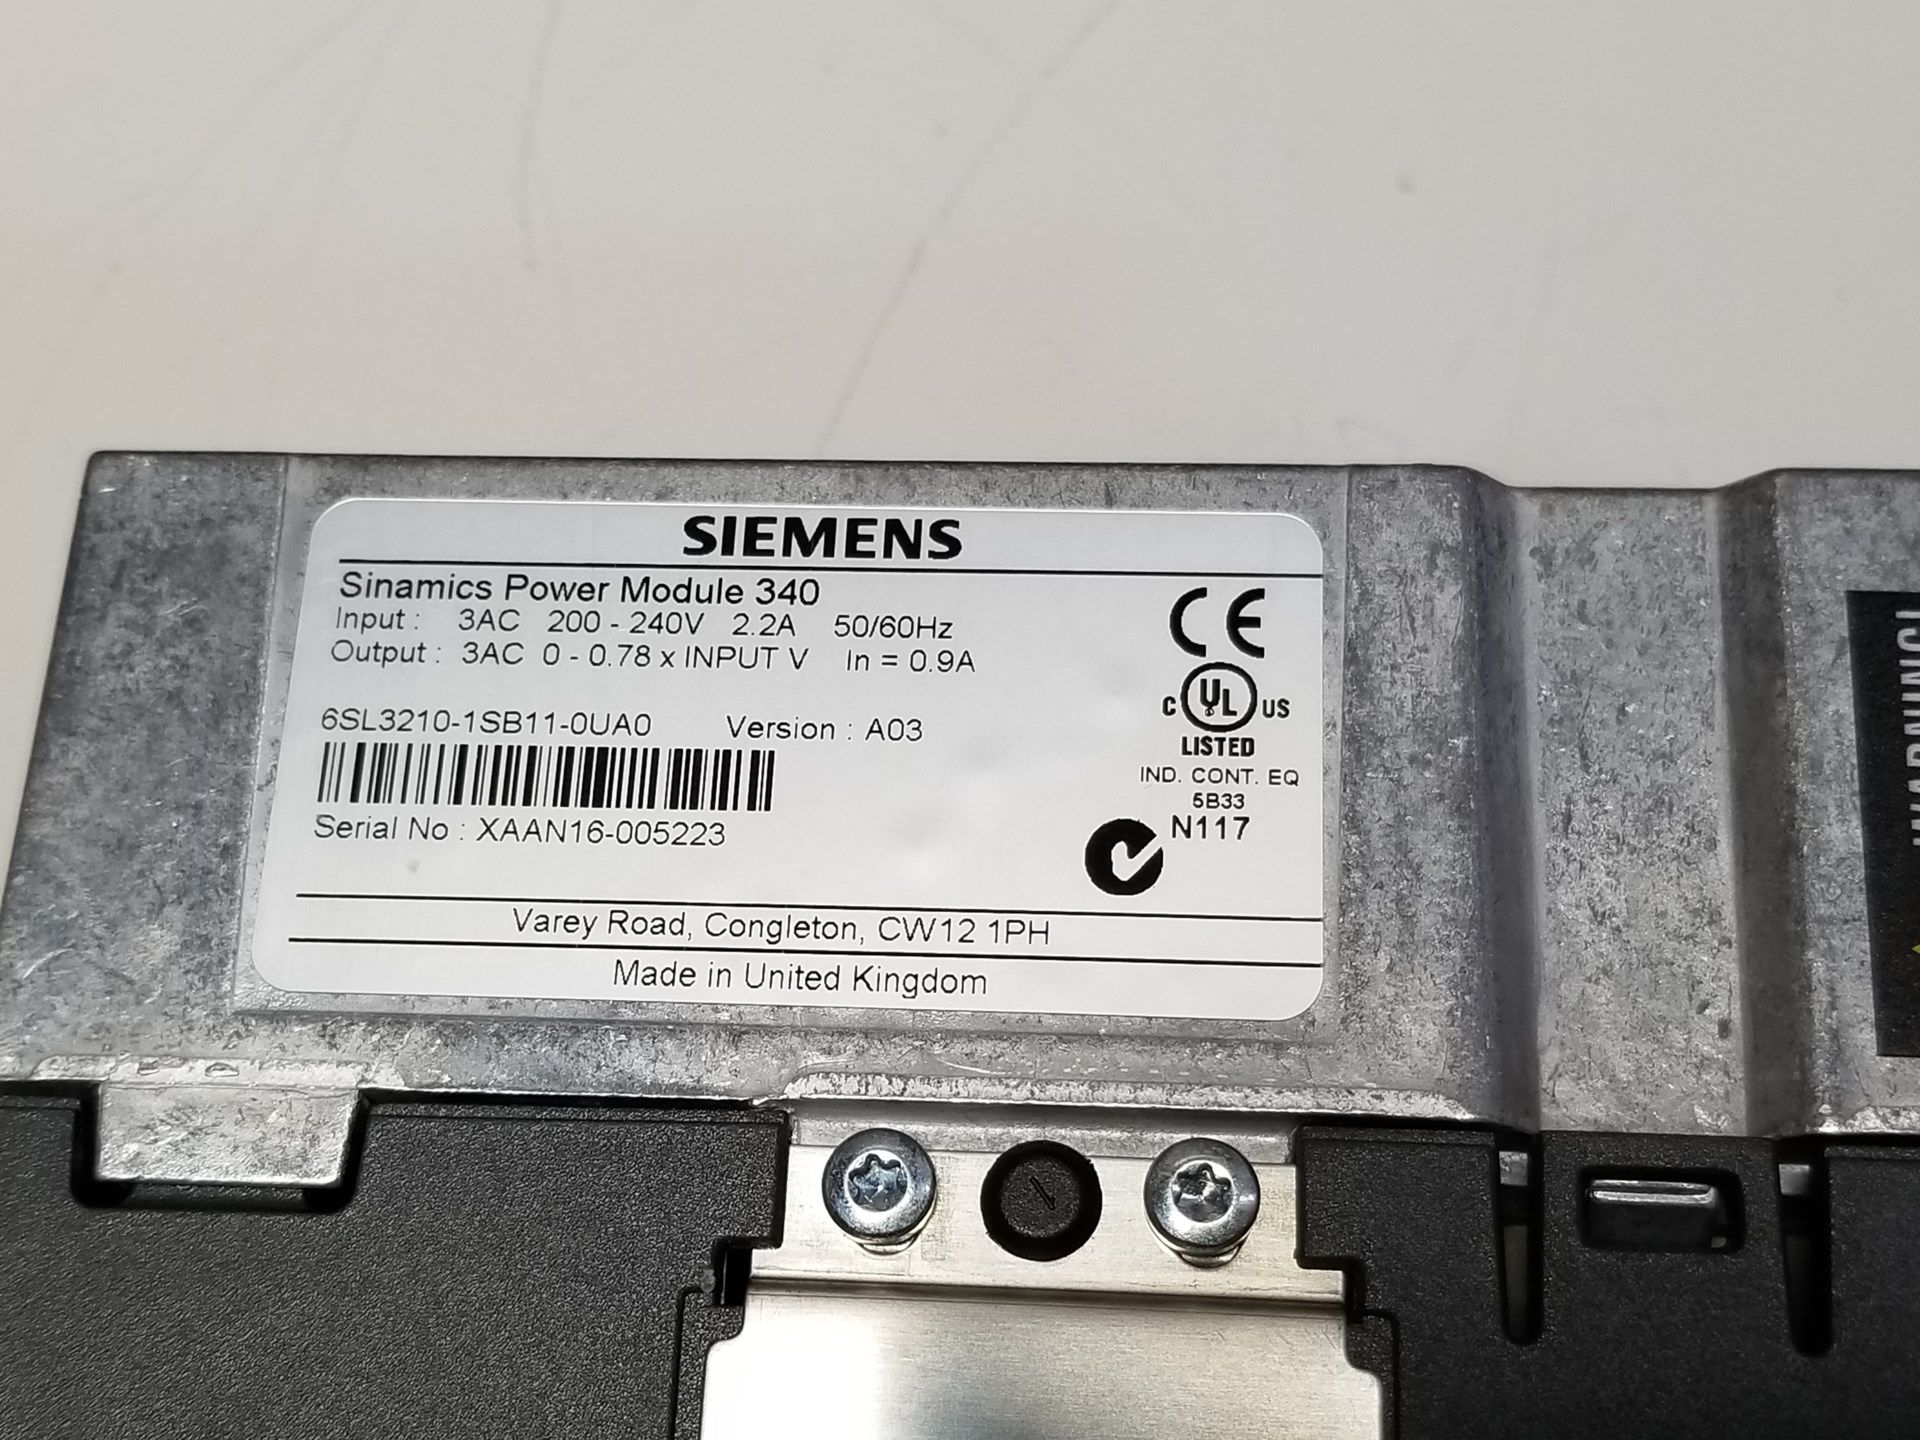 Siemens Sinamics Control Unit PLC Module W/Power Module - Image 6 of 7